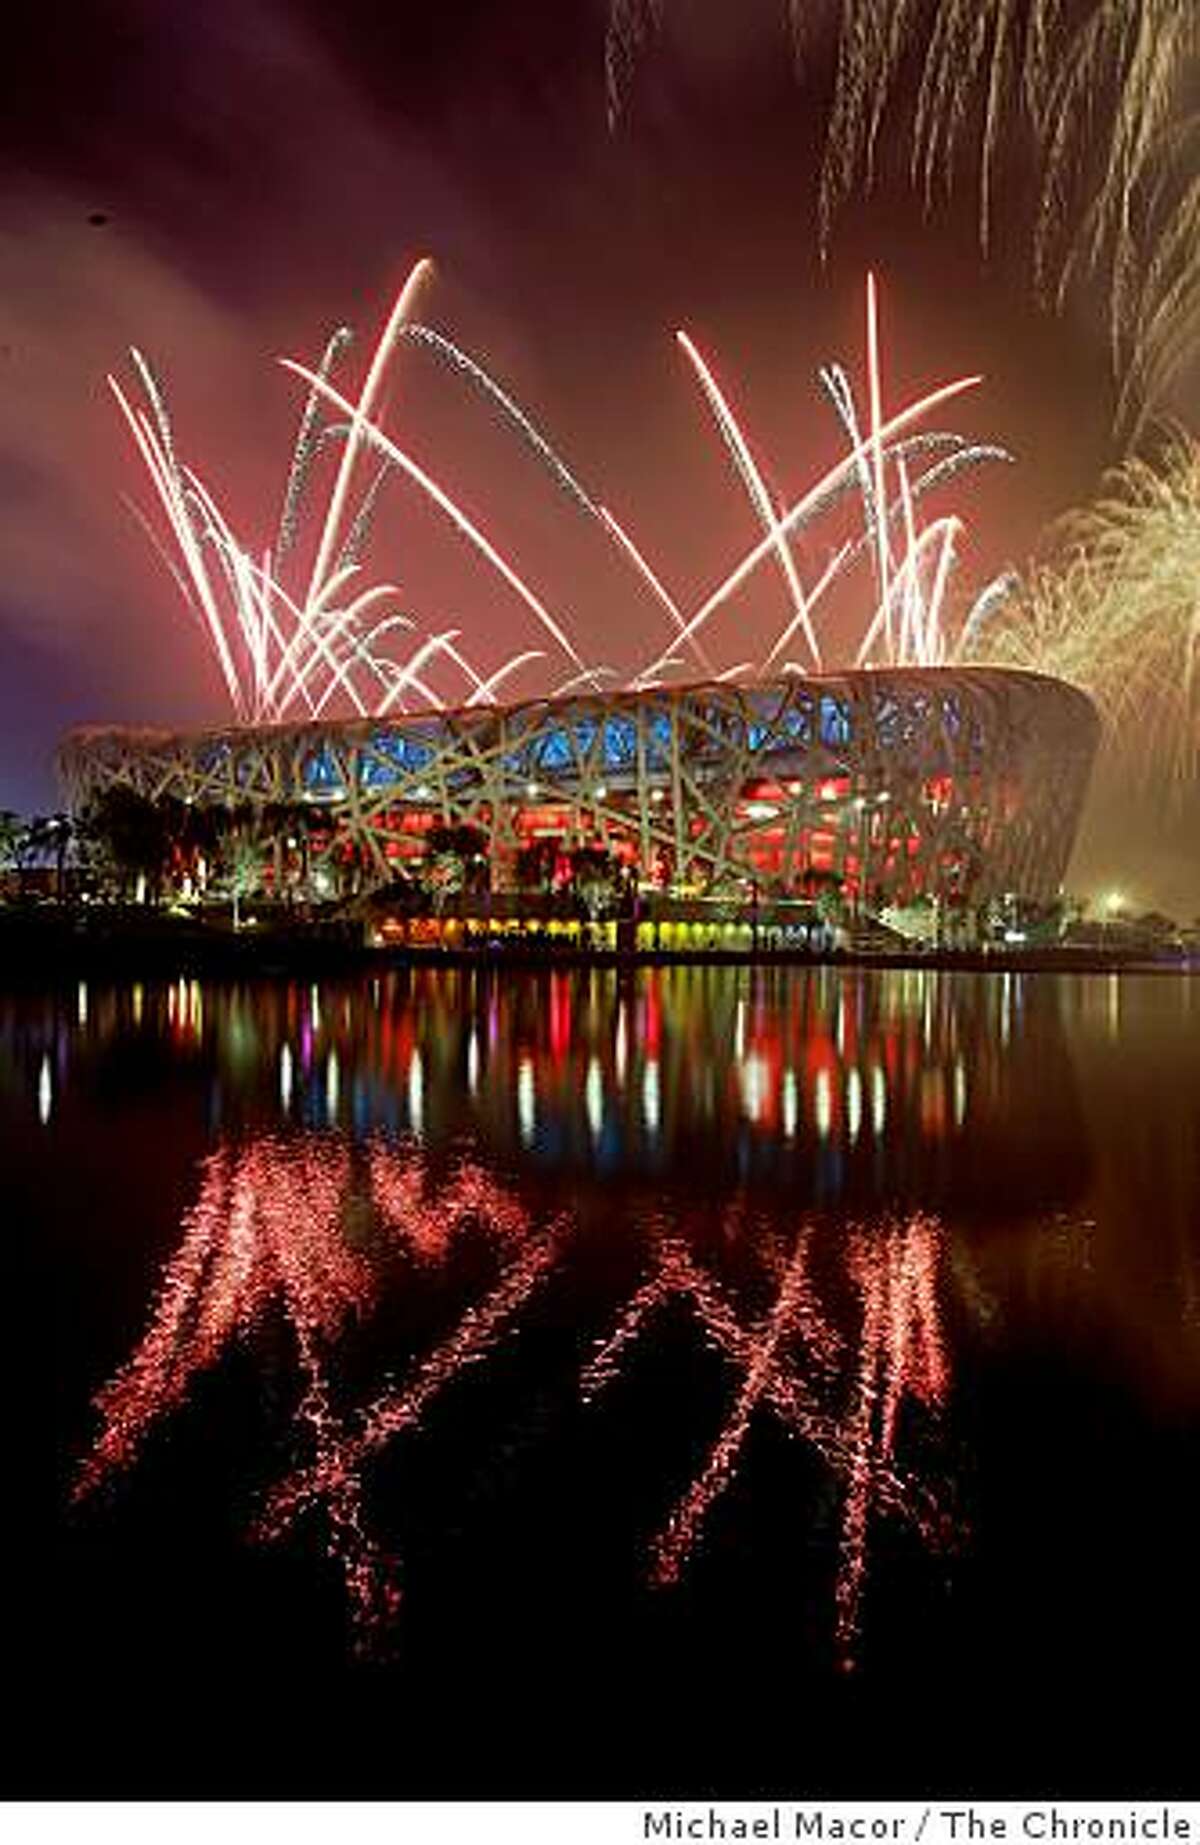 Beijing Olympics' Opening Ceremonies a big hit